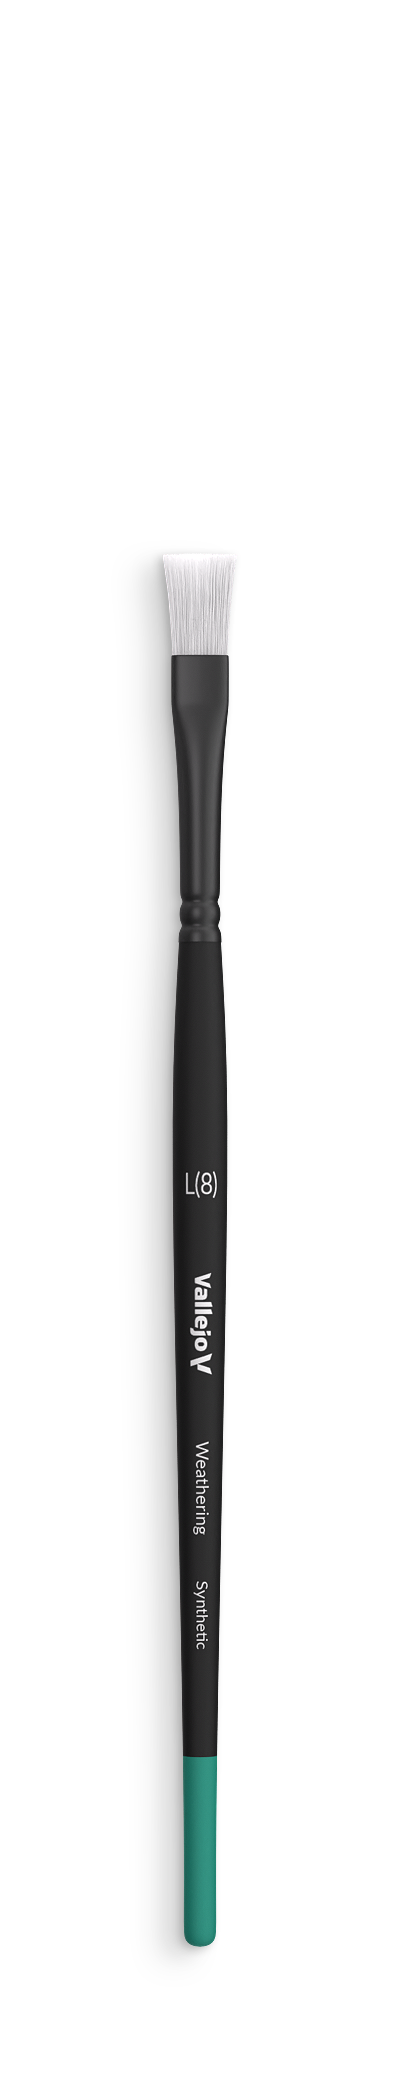 B09003 Vallejo Weathering Brushes - Flat Synthetic Brush (Large)